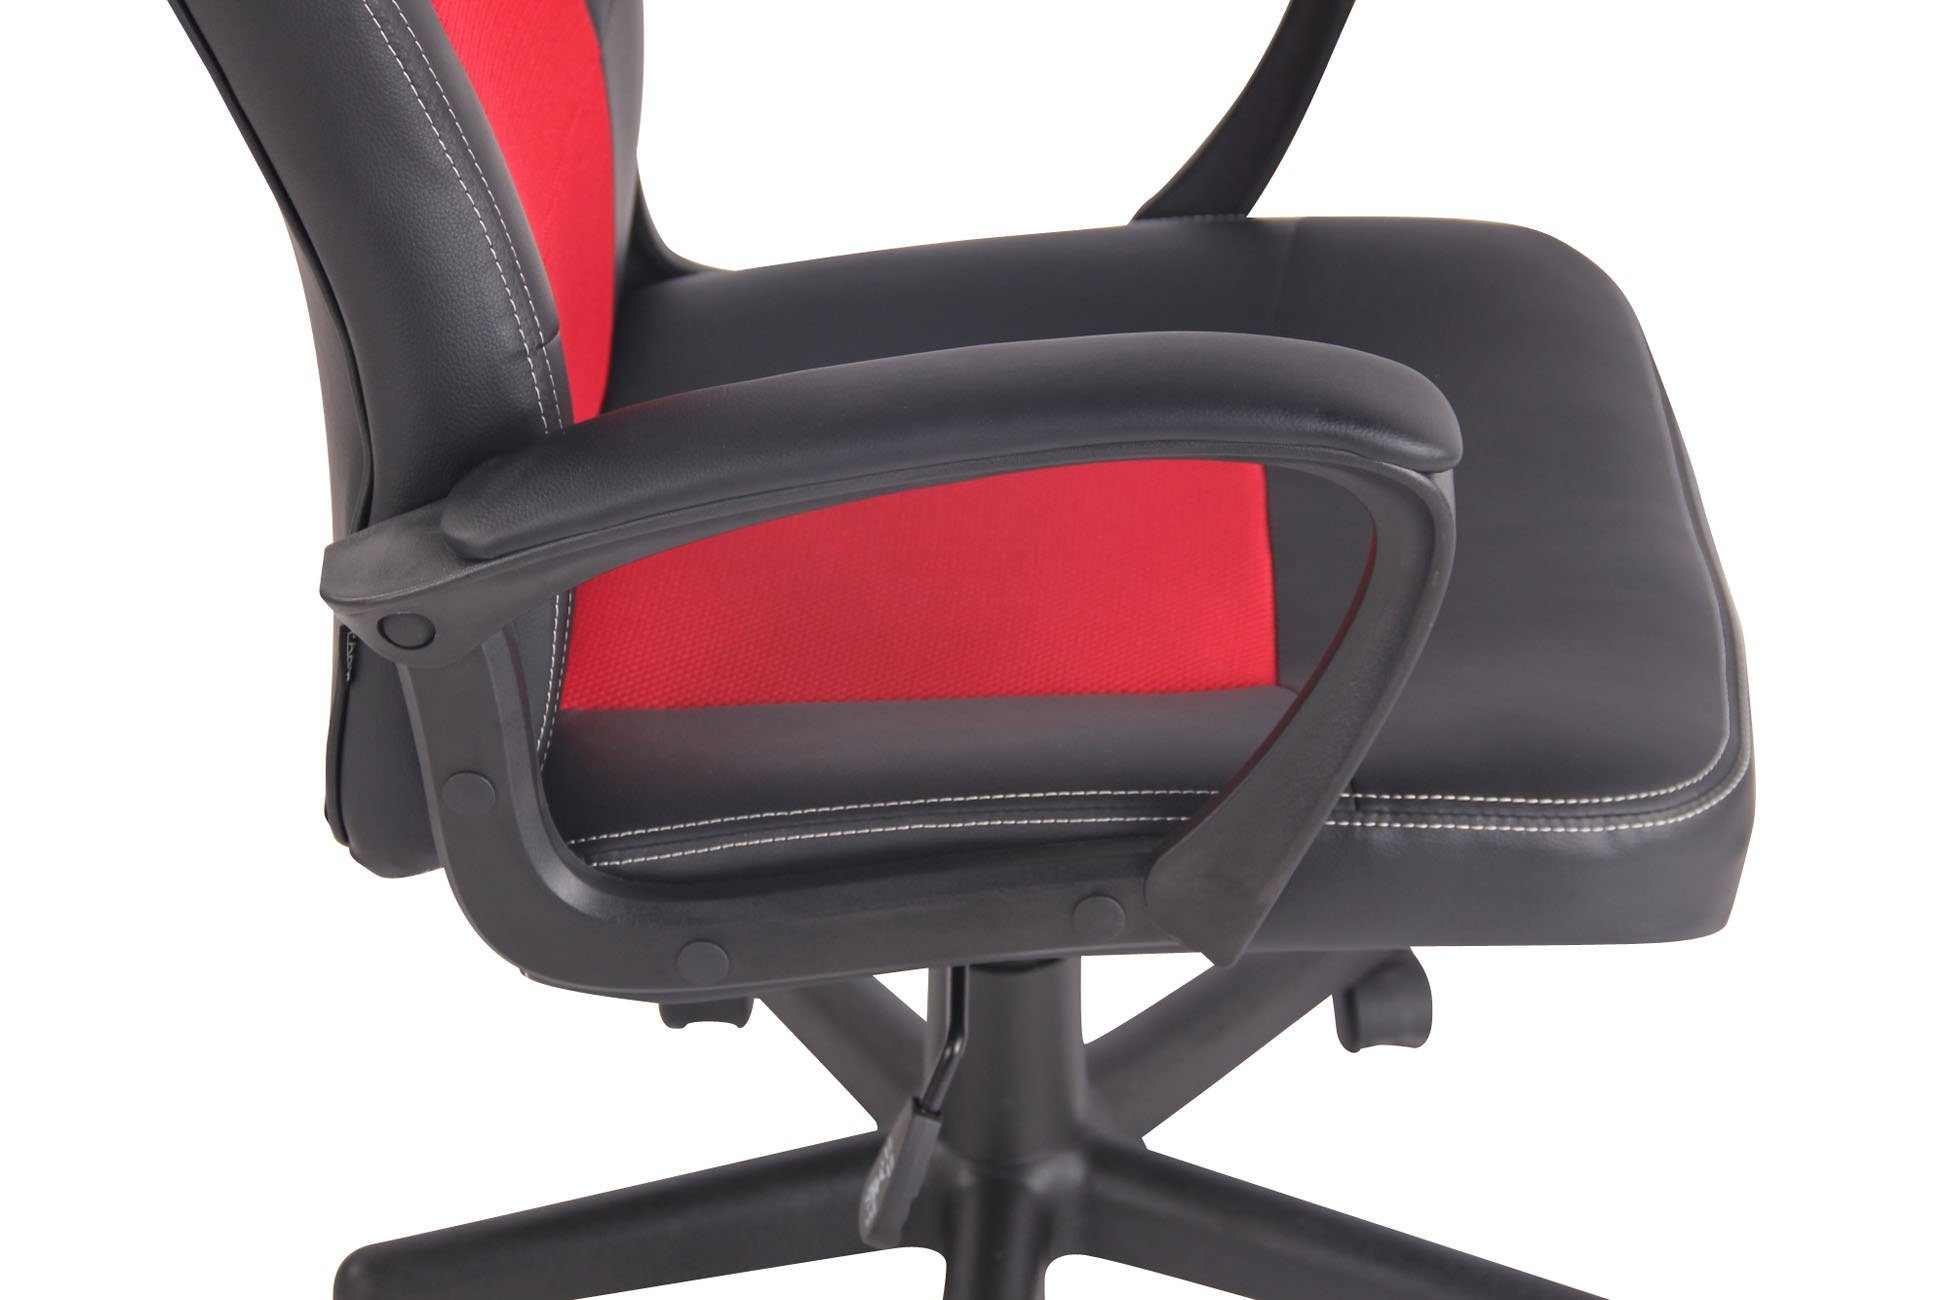 Chair drehbar höhenverstellbar und Elbing, CLP schwarz/rot Gaming